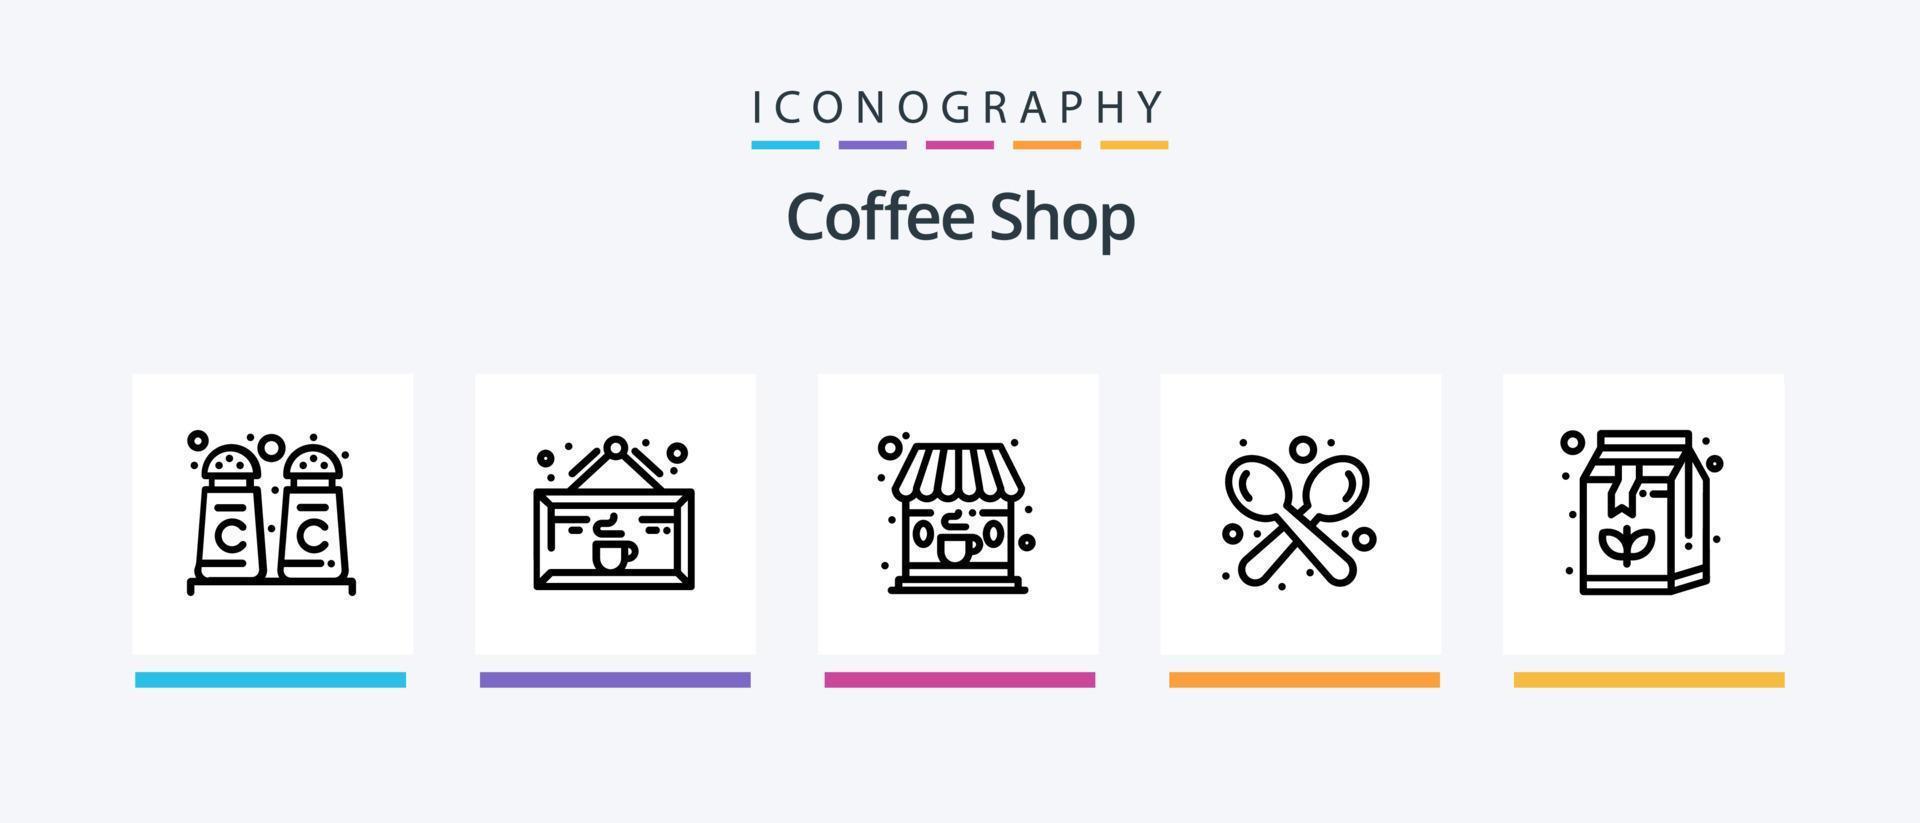 koffie winkel lijn 5 icoon pak inclusief koffie. winkel. tafel. label. winkel. creatief pictogrammen ontwerp vector